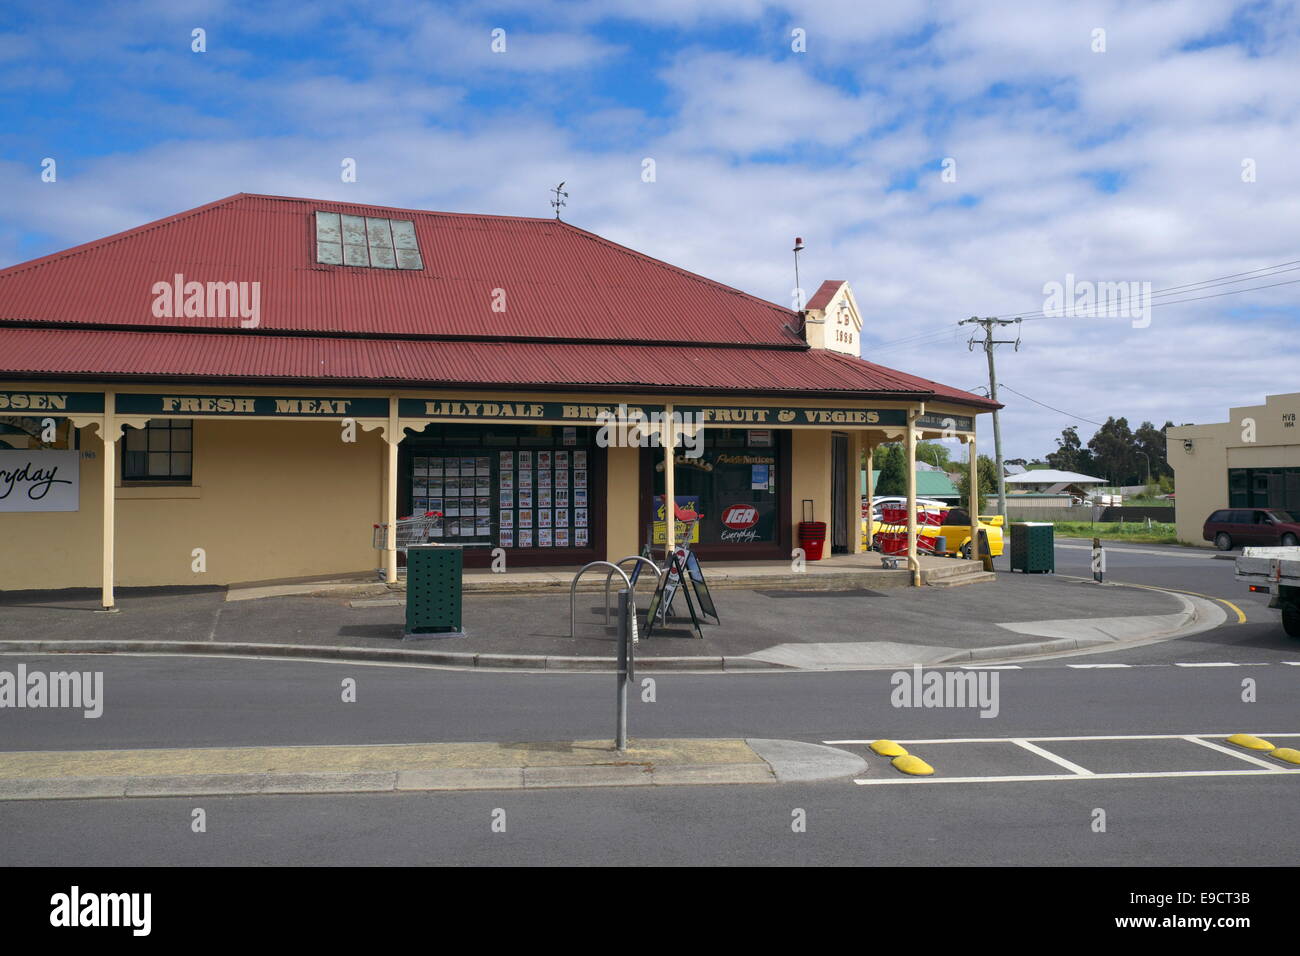 Lilydale village ville au nord-est de la Tasmanie, Australie Banque D'Images